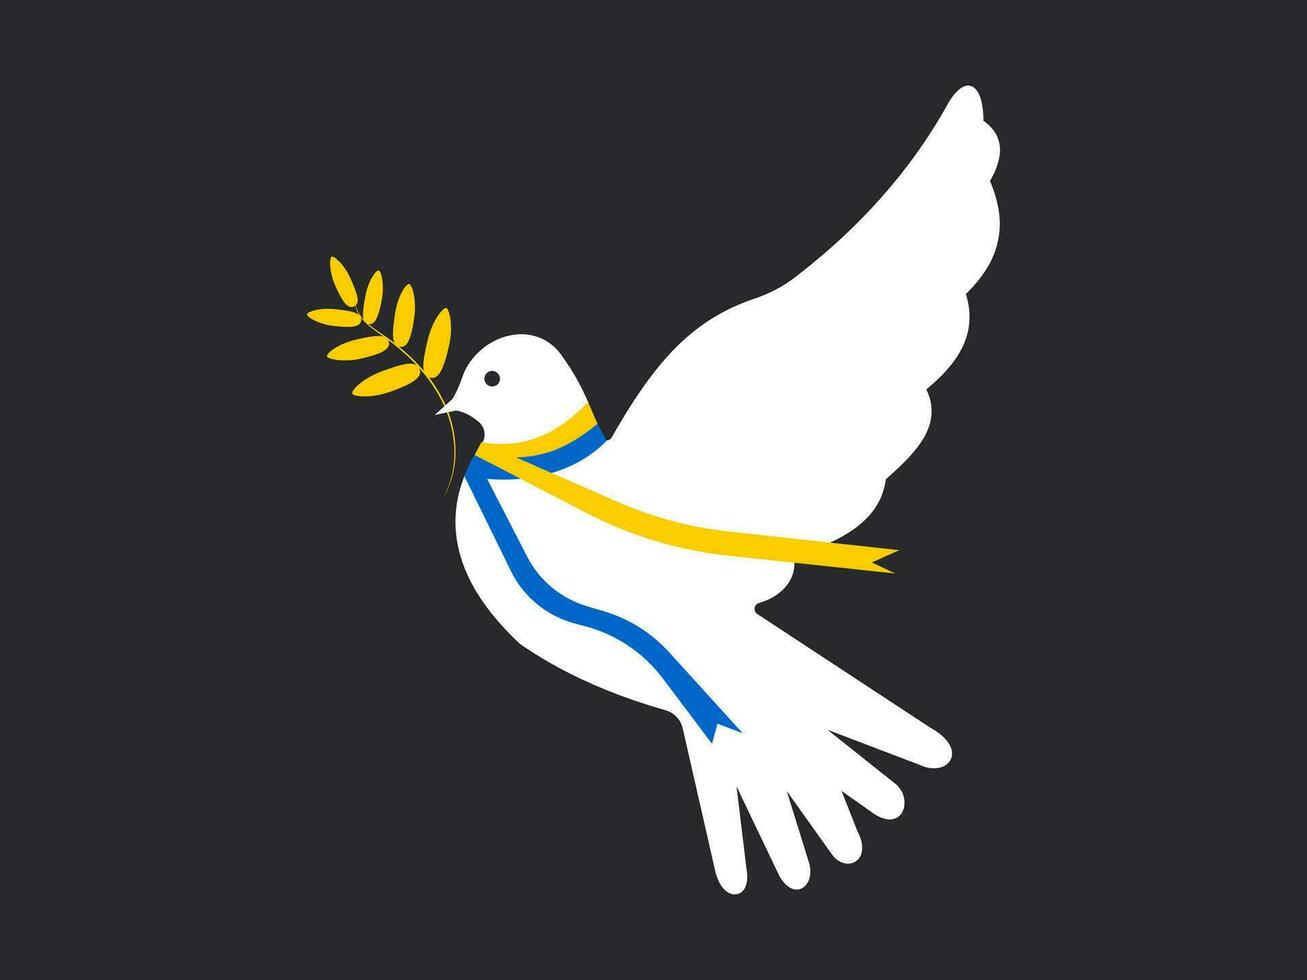 uma branco pomba do Paz com uma fita do a simbólico cores do a ucraniano bandeira do azul e amarelo em uma Preto fundo. vetor. vetor